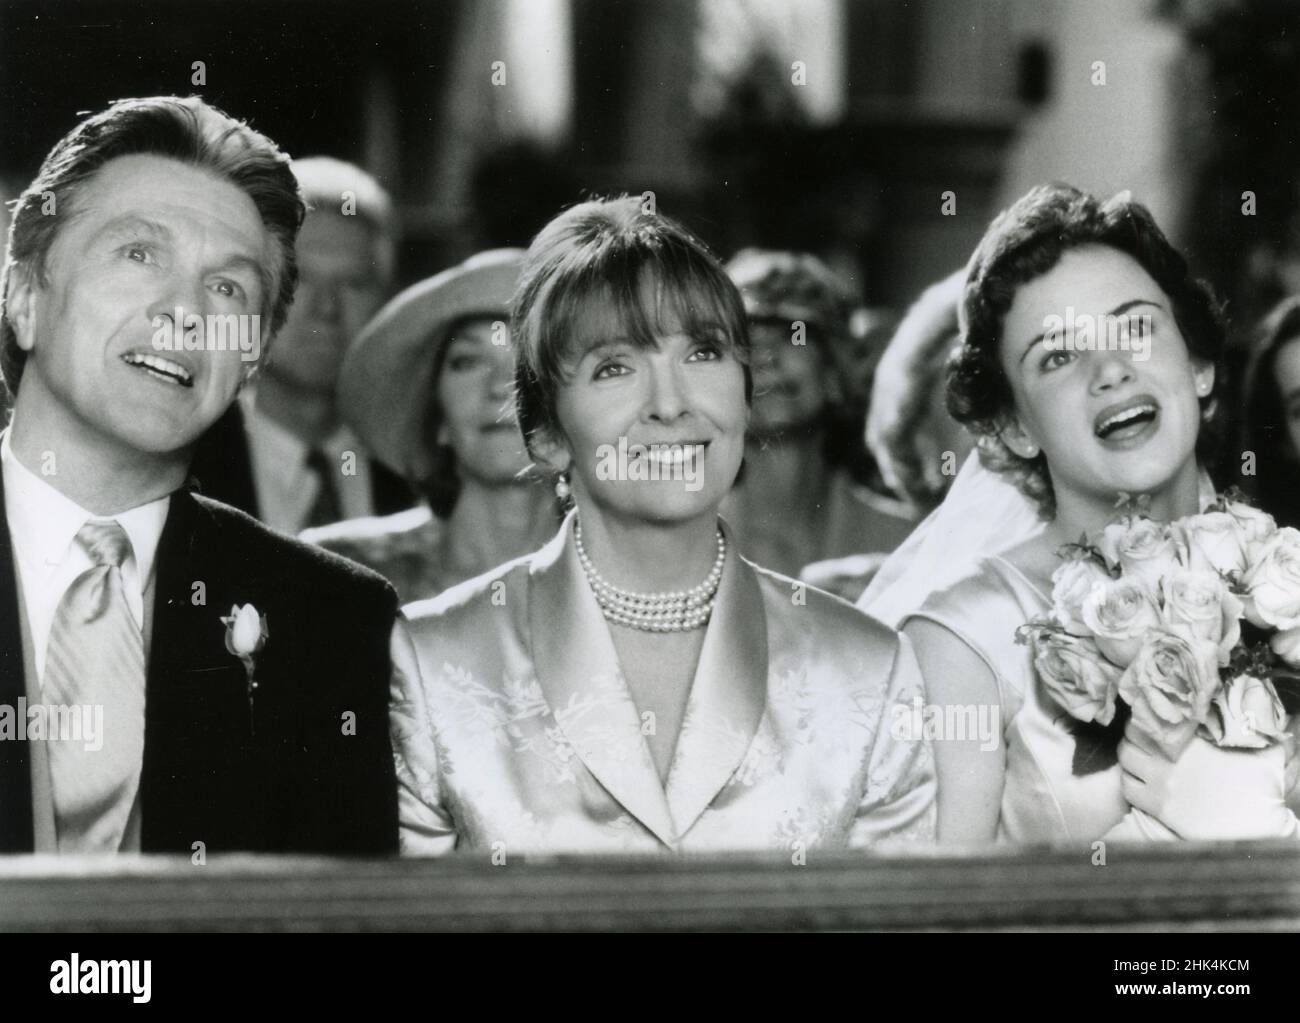 Les actrices américaines Diane Keaton, Juliette Lewis et Tom Skerritt dans le film The Other Sister, USA 1999 Banque D'Images